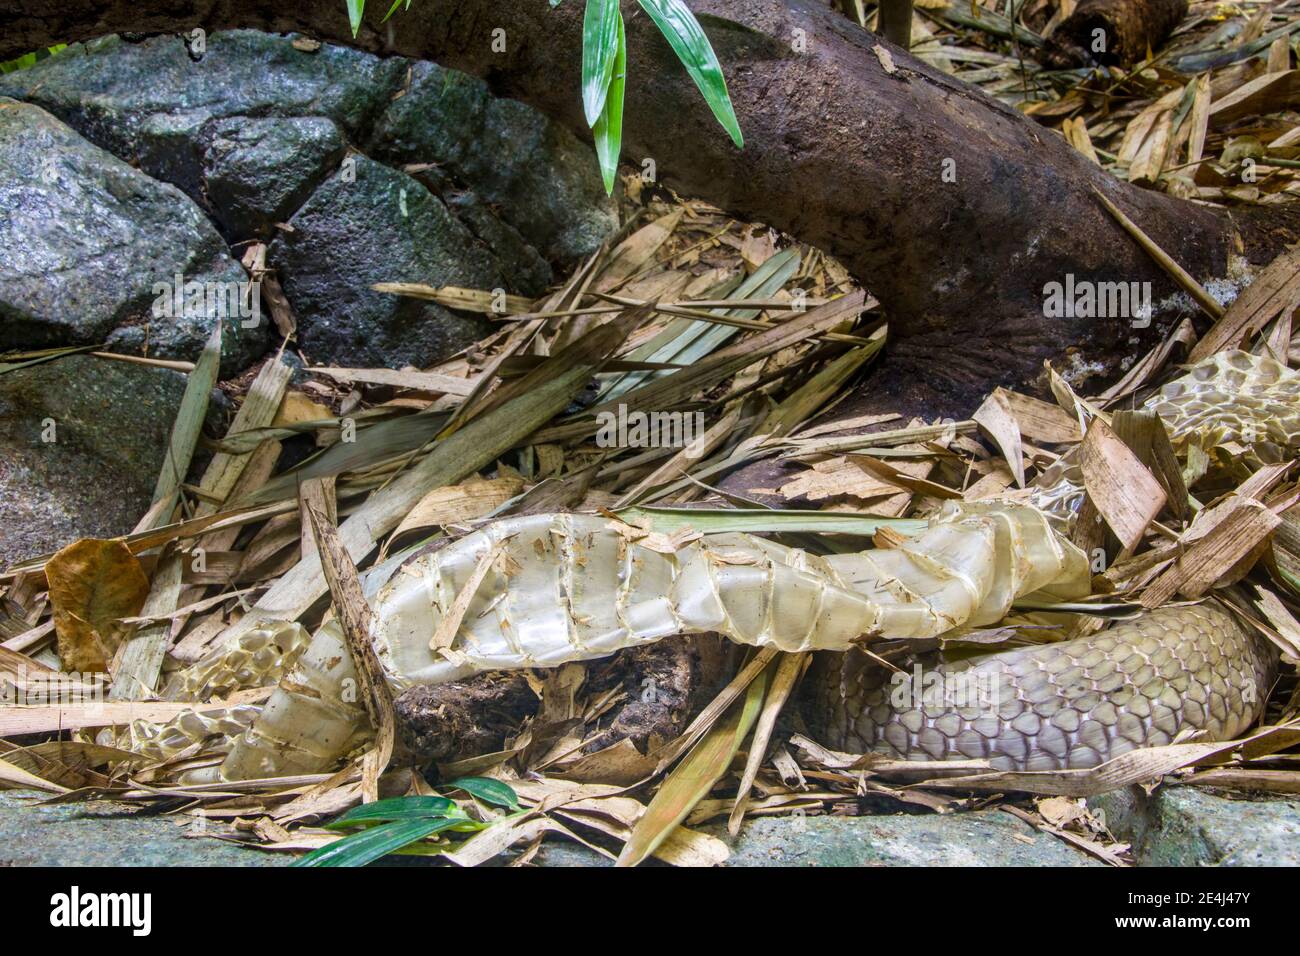 La peau de serpent du roi cobra (Ophiophage hannah). Un grand écoulement endémique aux forêts de l'Inde à travers l'Asie du Sud-est. Banque D'Images